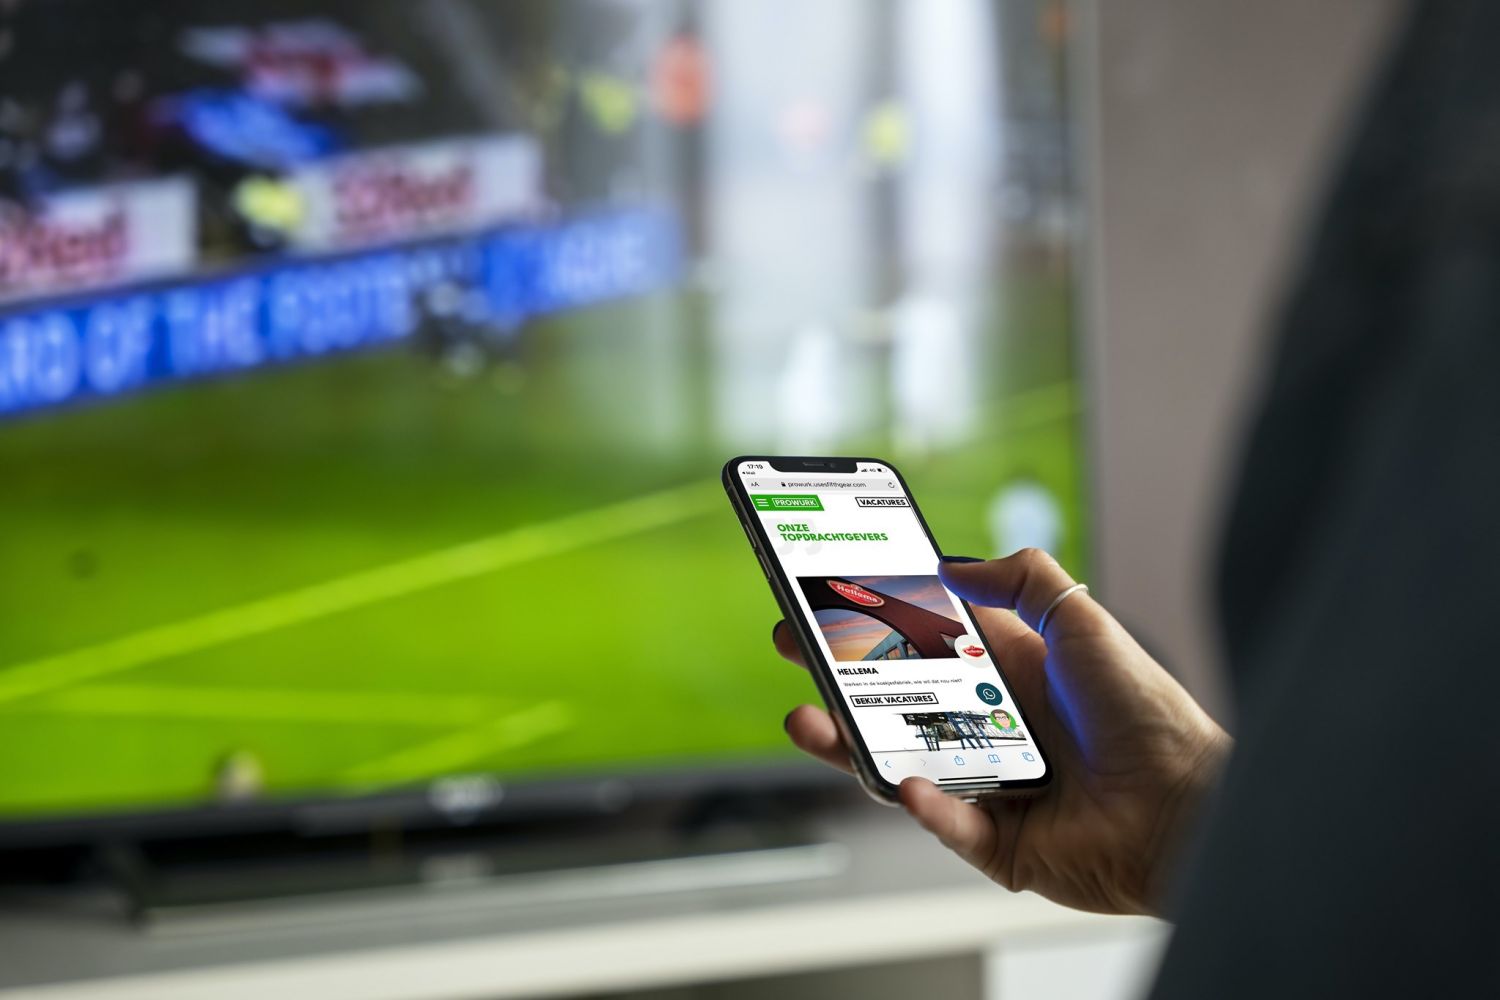 De homepage van ProWurk op een mobiel met een voetbalwedstrijd op een tv op de achtergrond